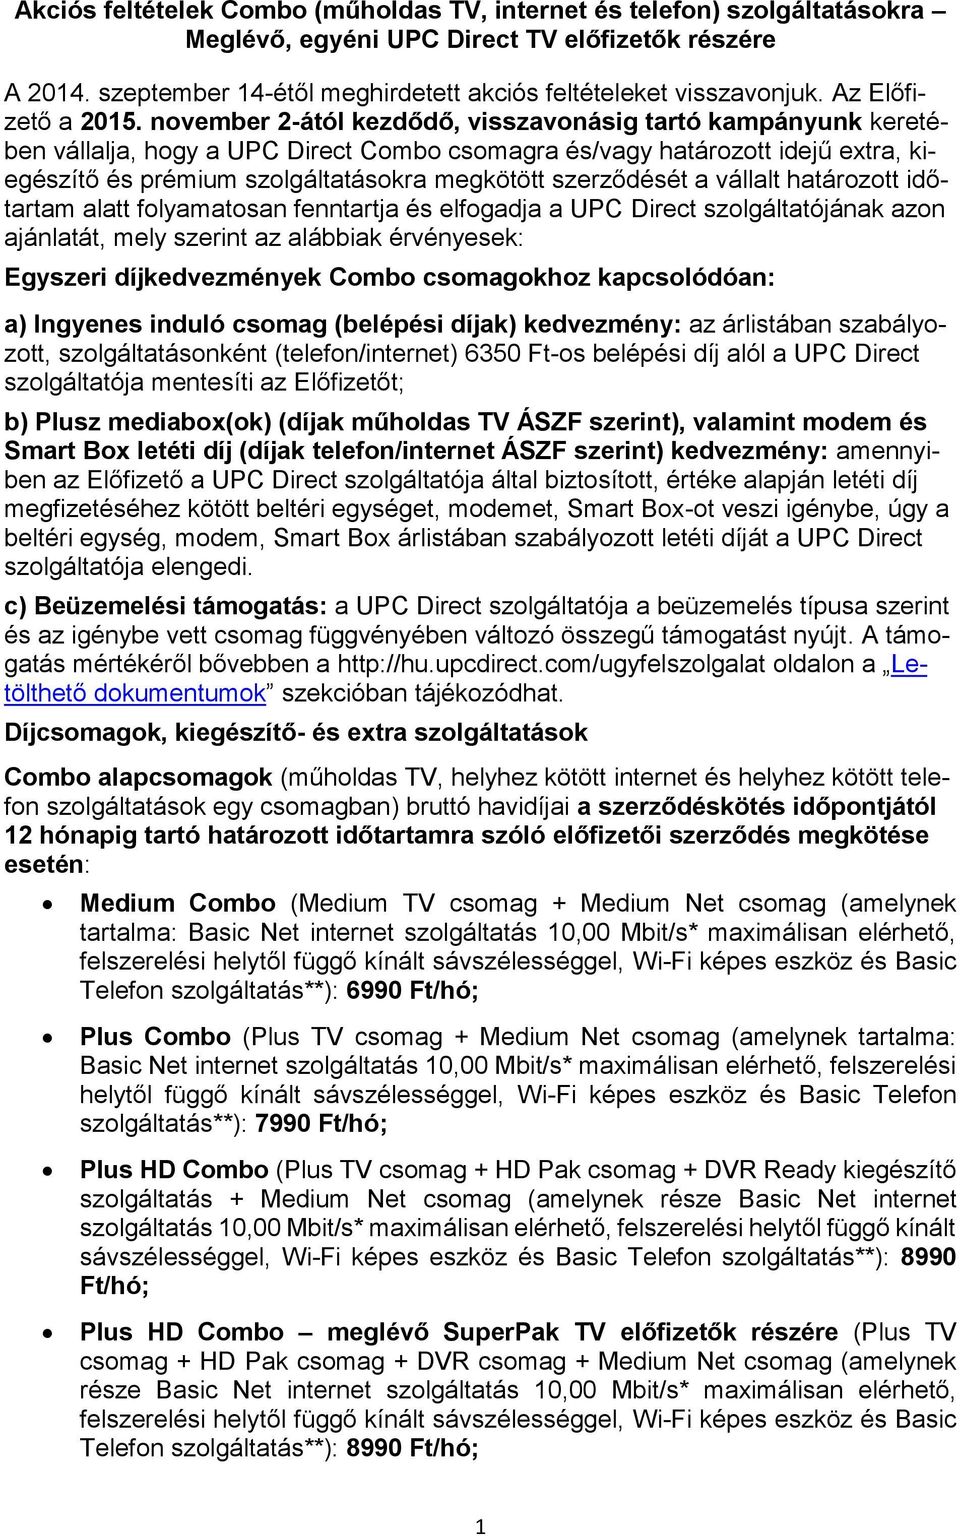 Akciós feltételek Combo (műholdas TV, internet és telefon) szolgáltatásokra  Meglévő, egyéni UPC Direct TV előfizetők részére - PDF Free Download